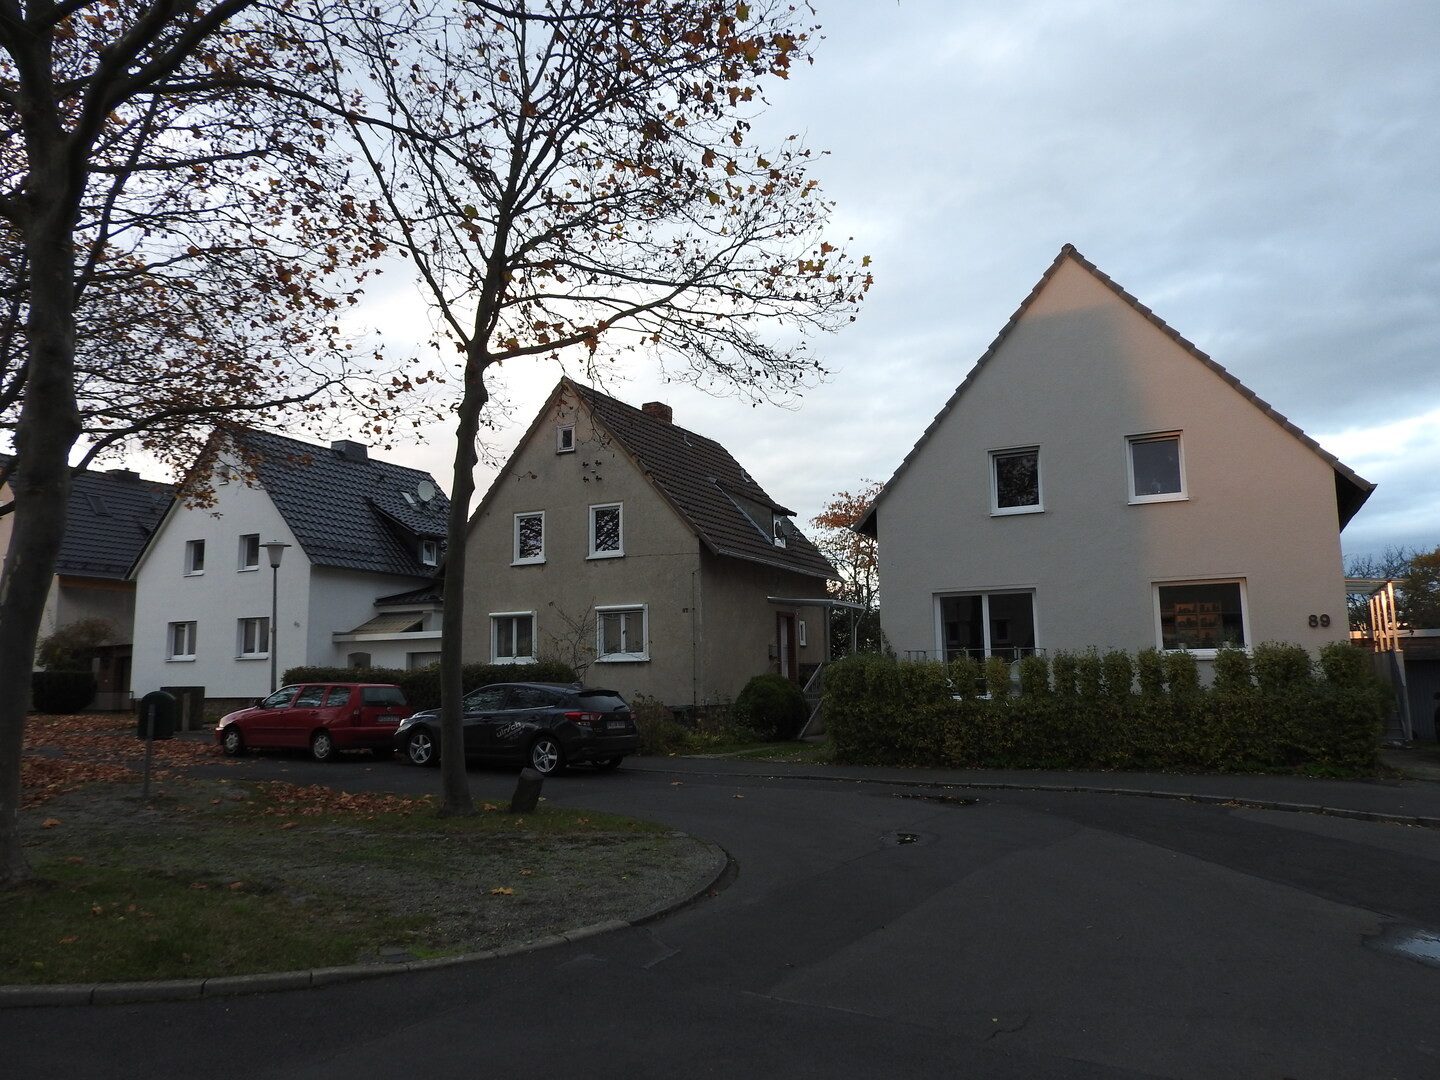 Immobilienangebot - Kassel / Süsterfeld - Alle - 2ZKB mit Garten in ruhiger Lage ab 01.01.2021 zu vermieten!